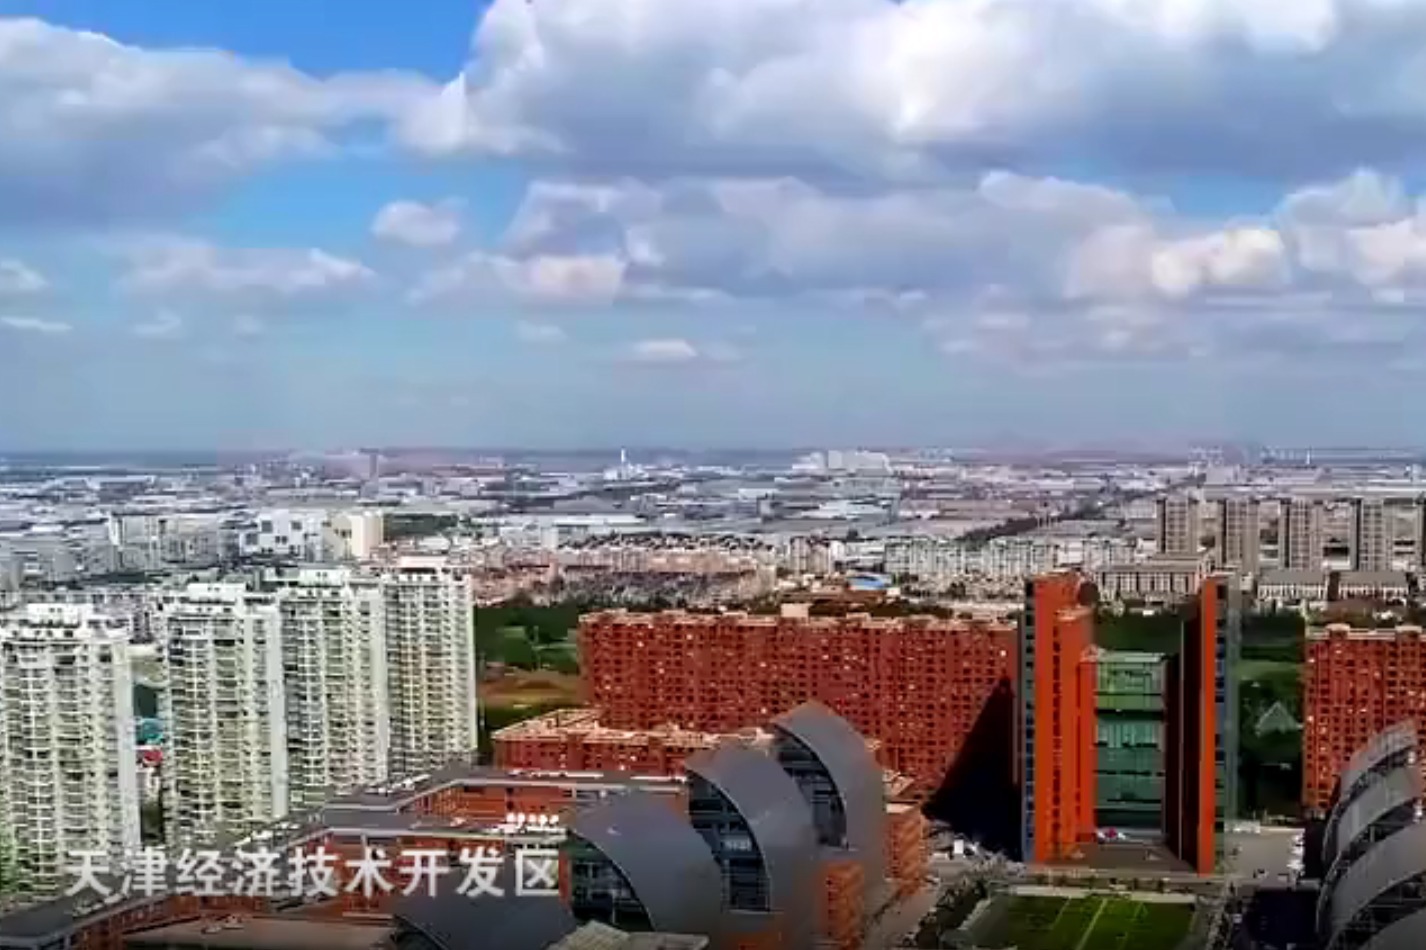 "滨城"之于天津,究竟意味着什么?